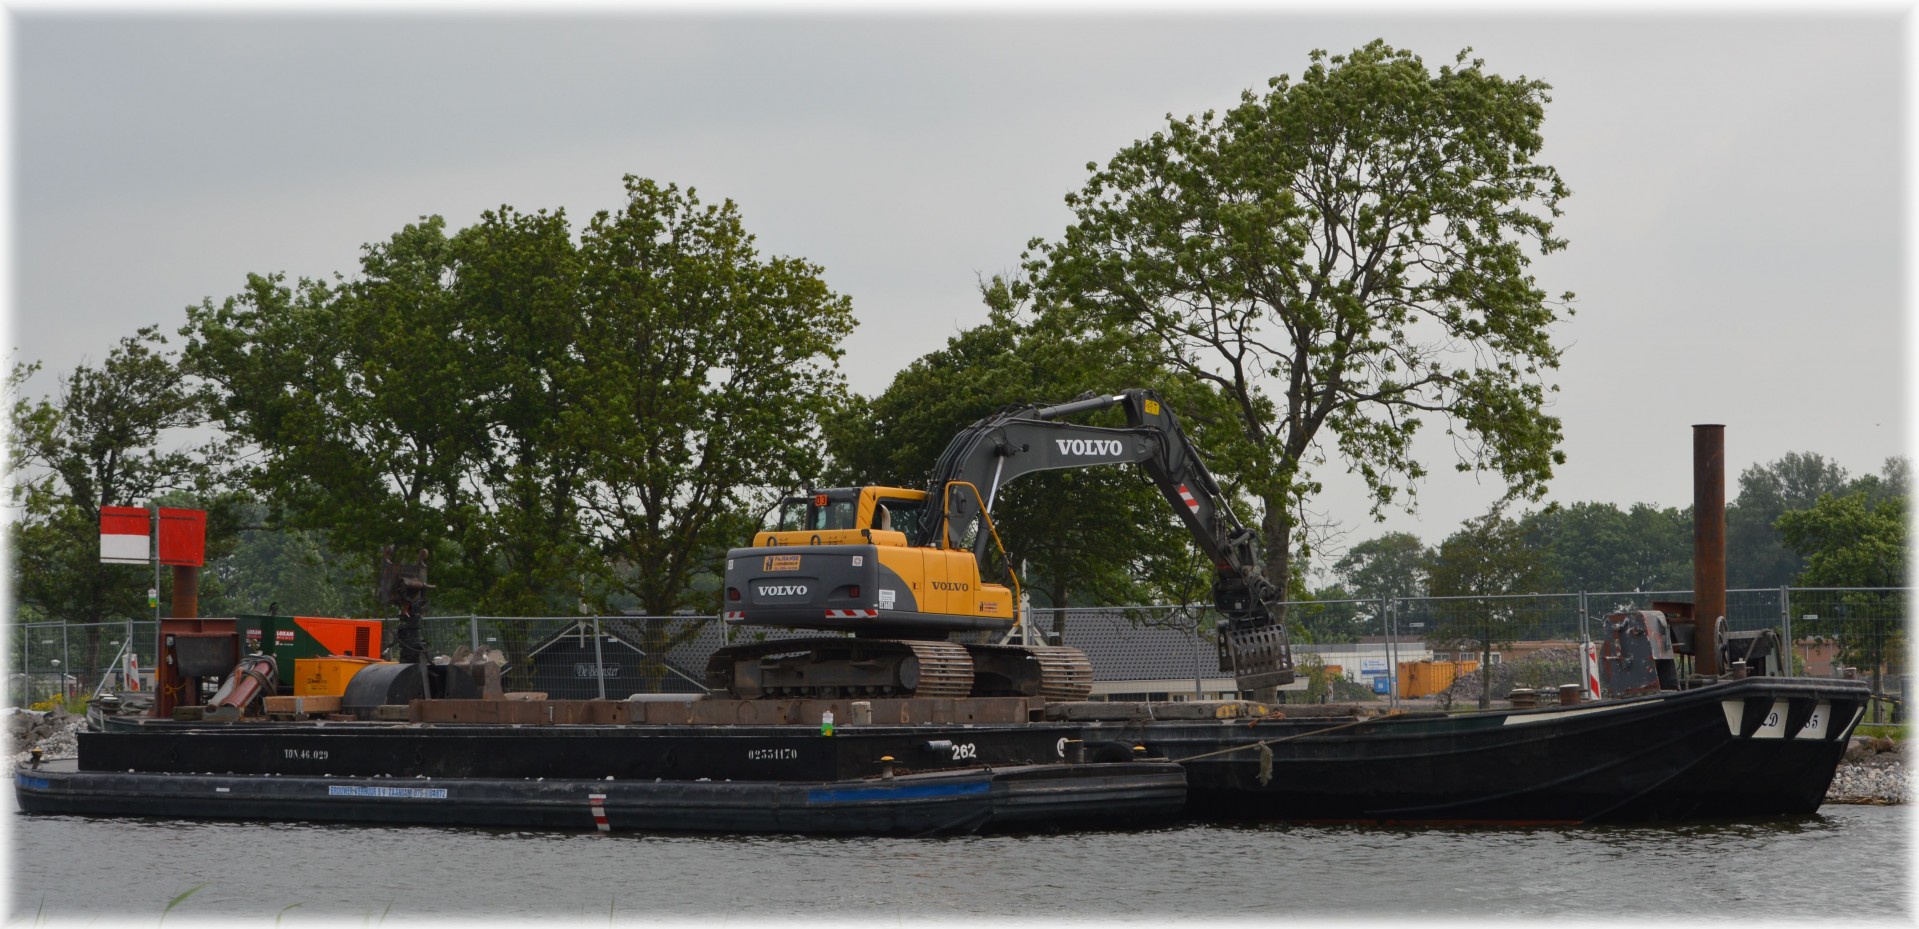 excavator boat excavation free photo